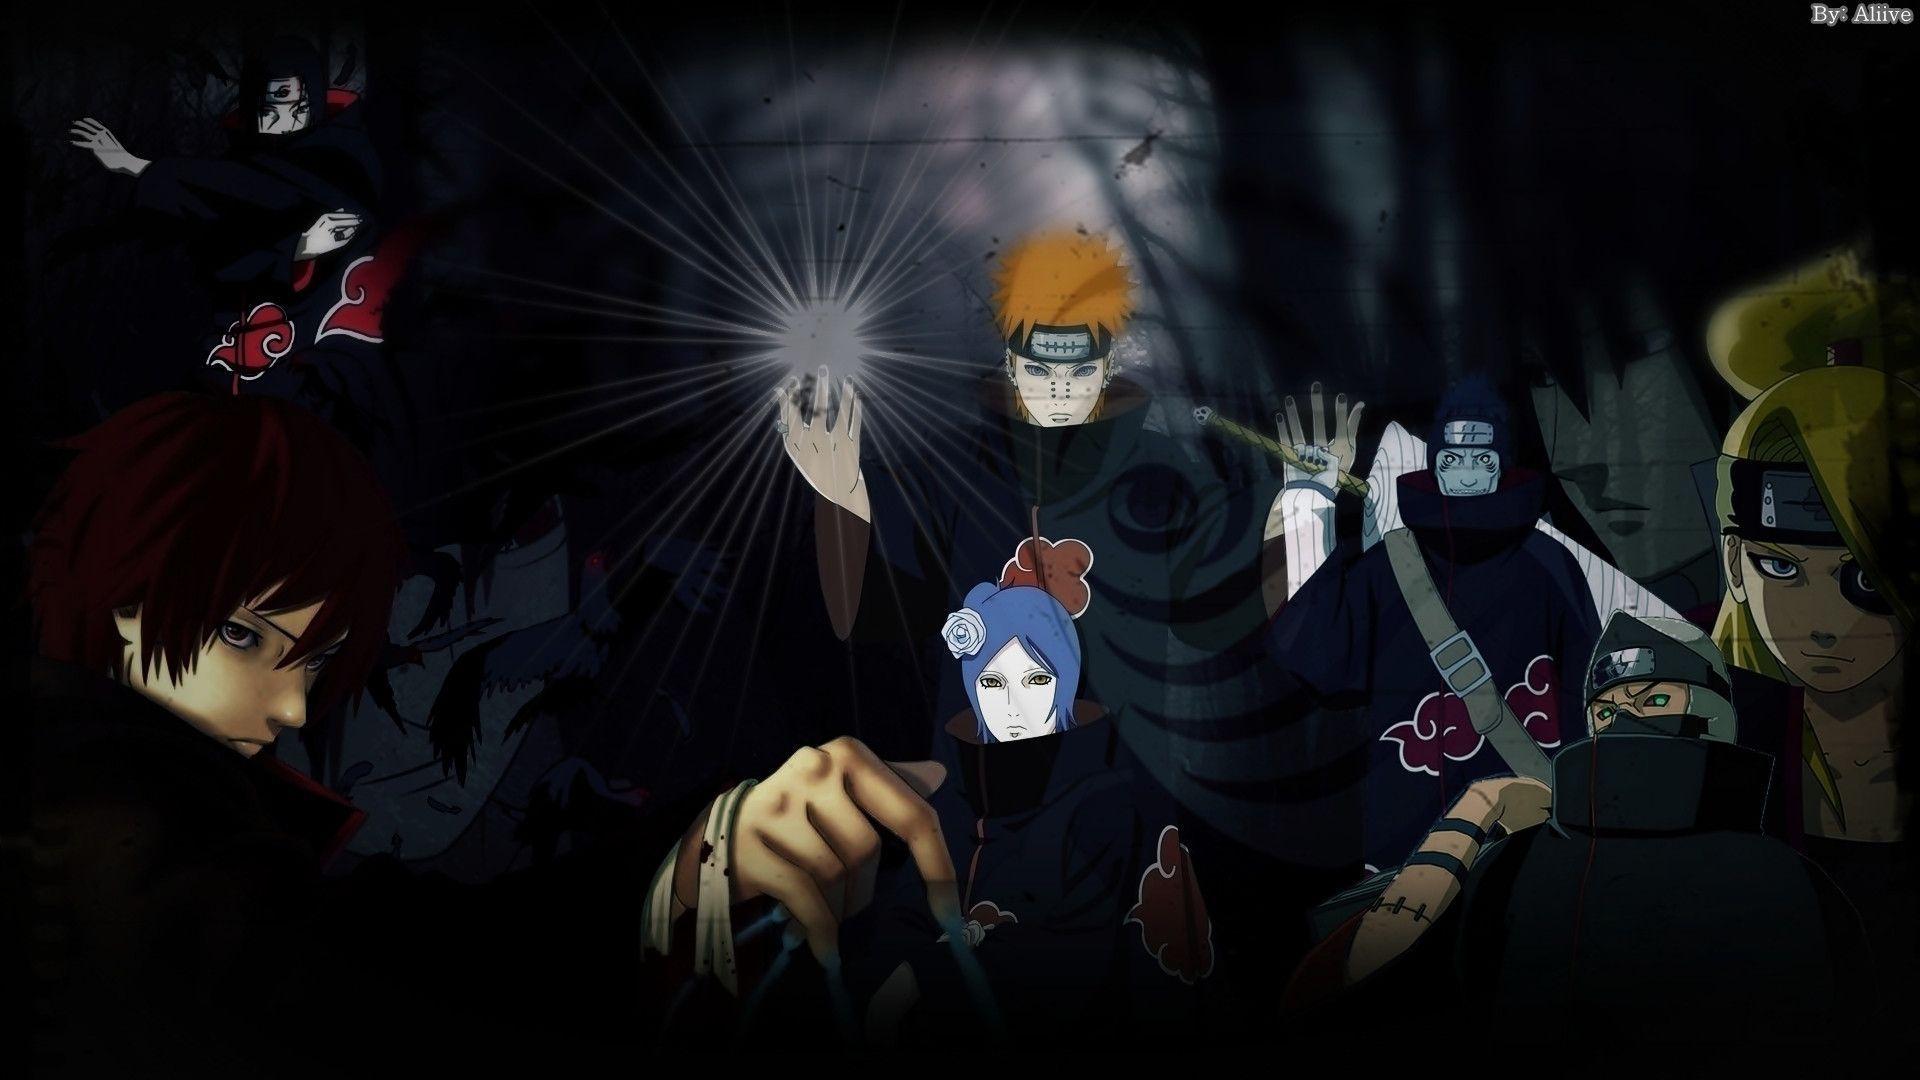 Akatsuki Wallpaper HD. Naruto™